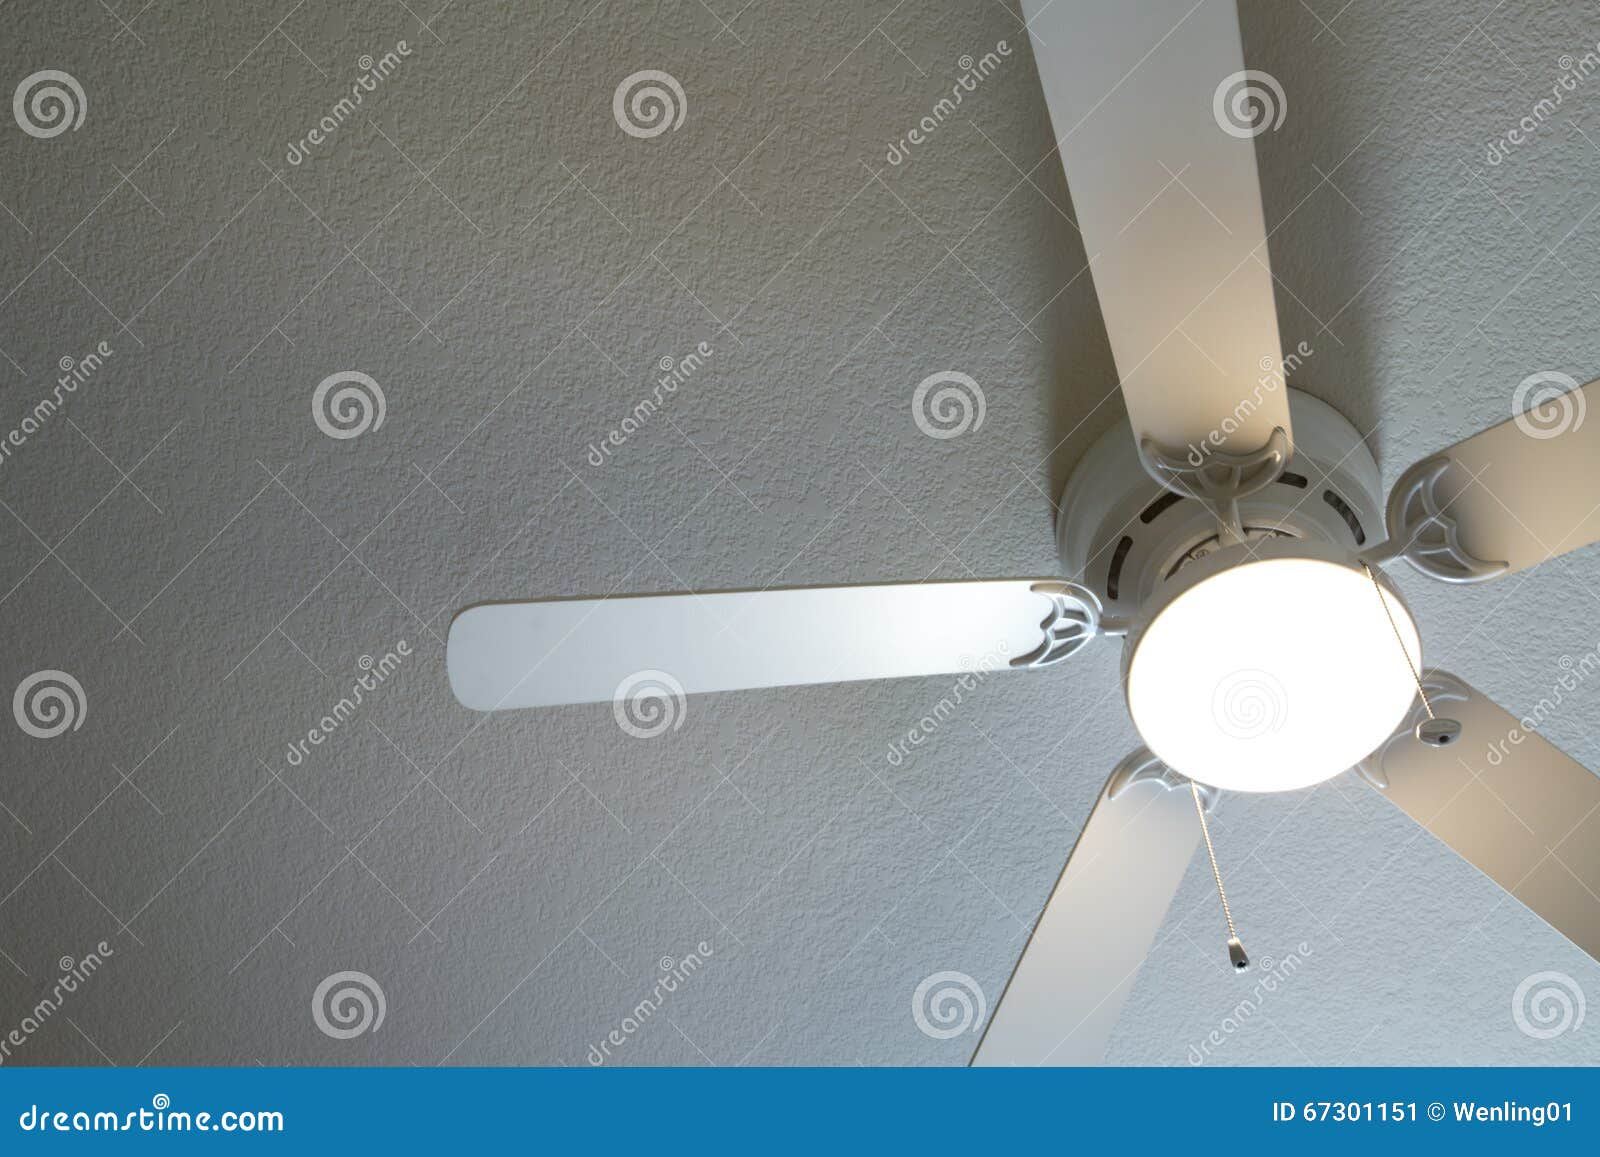 ceiling fan light is on